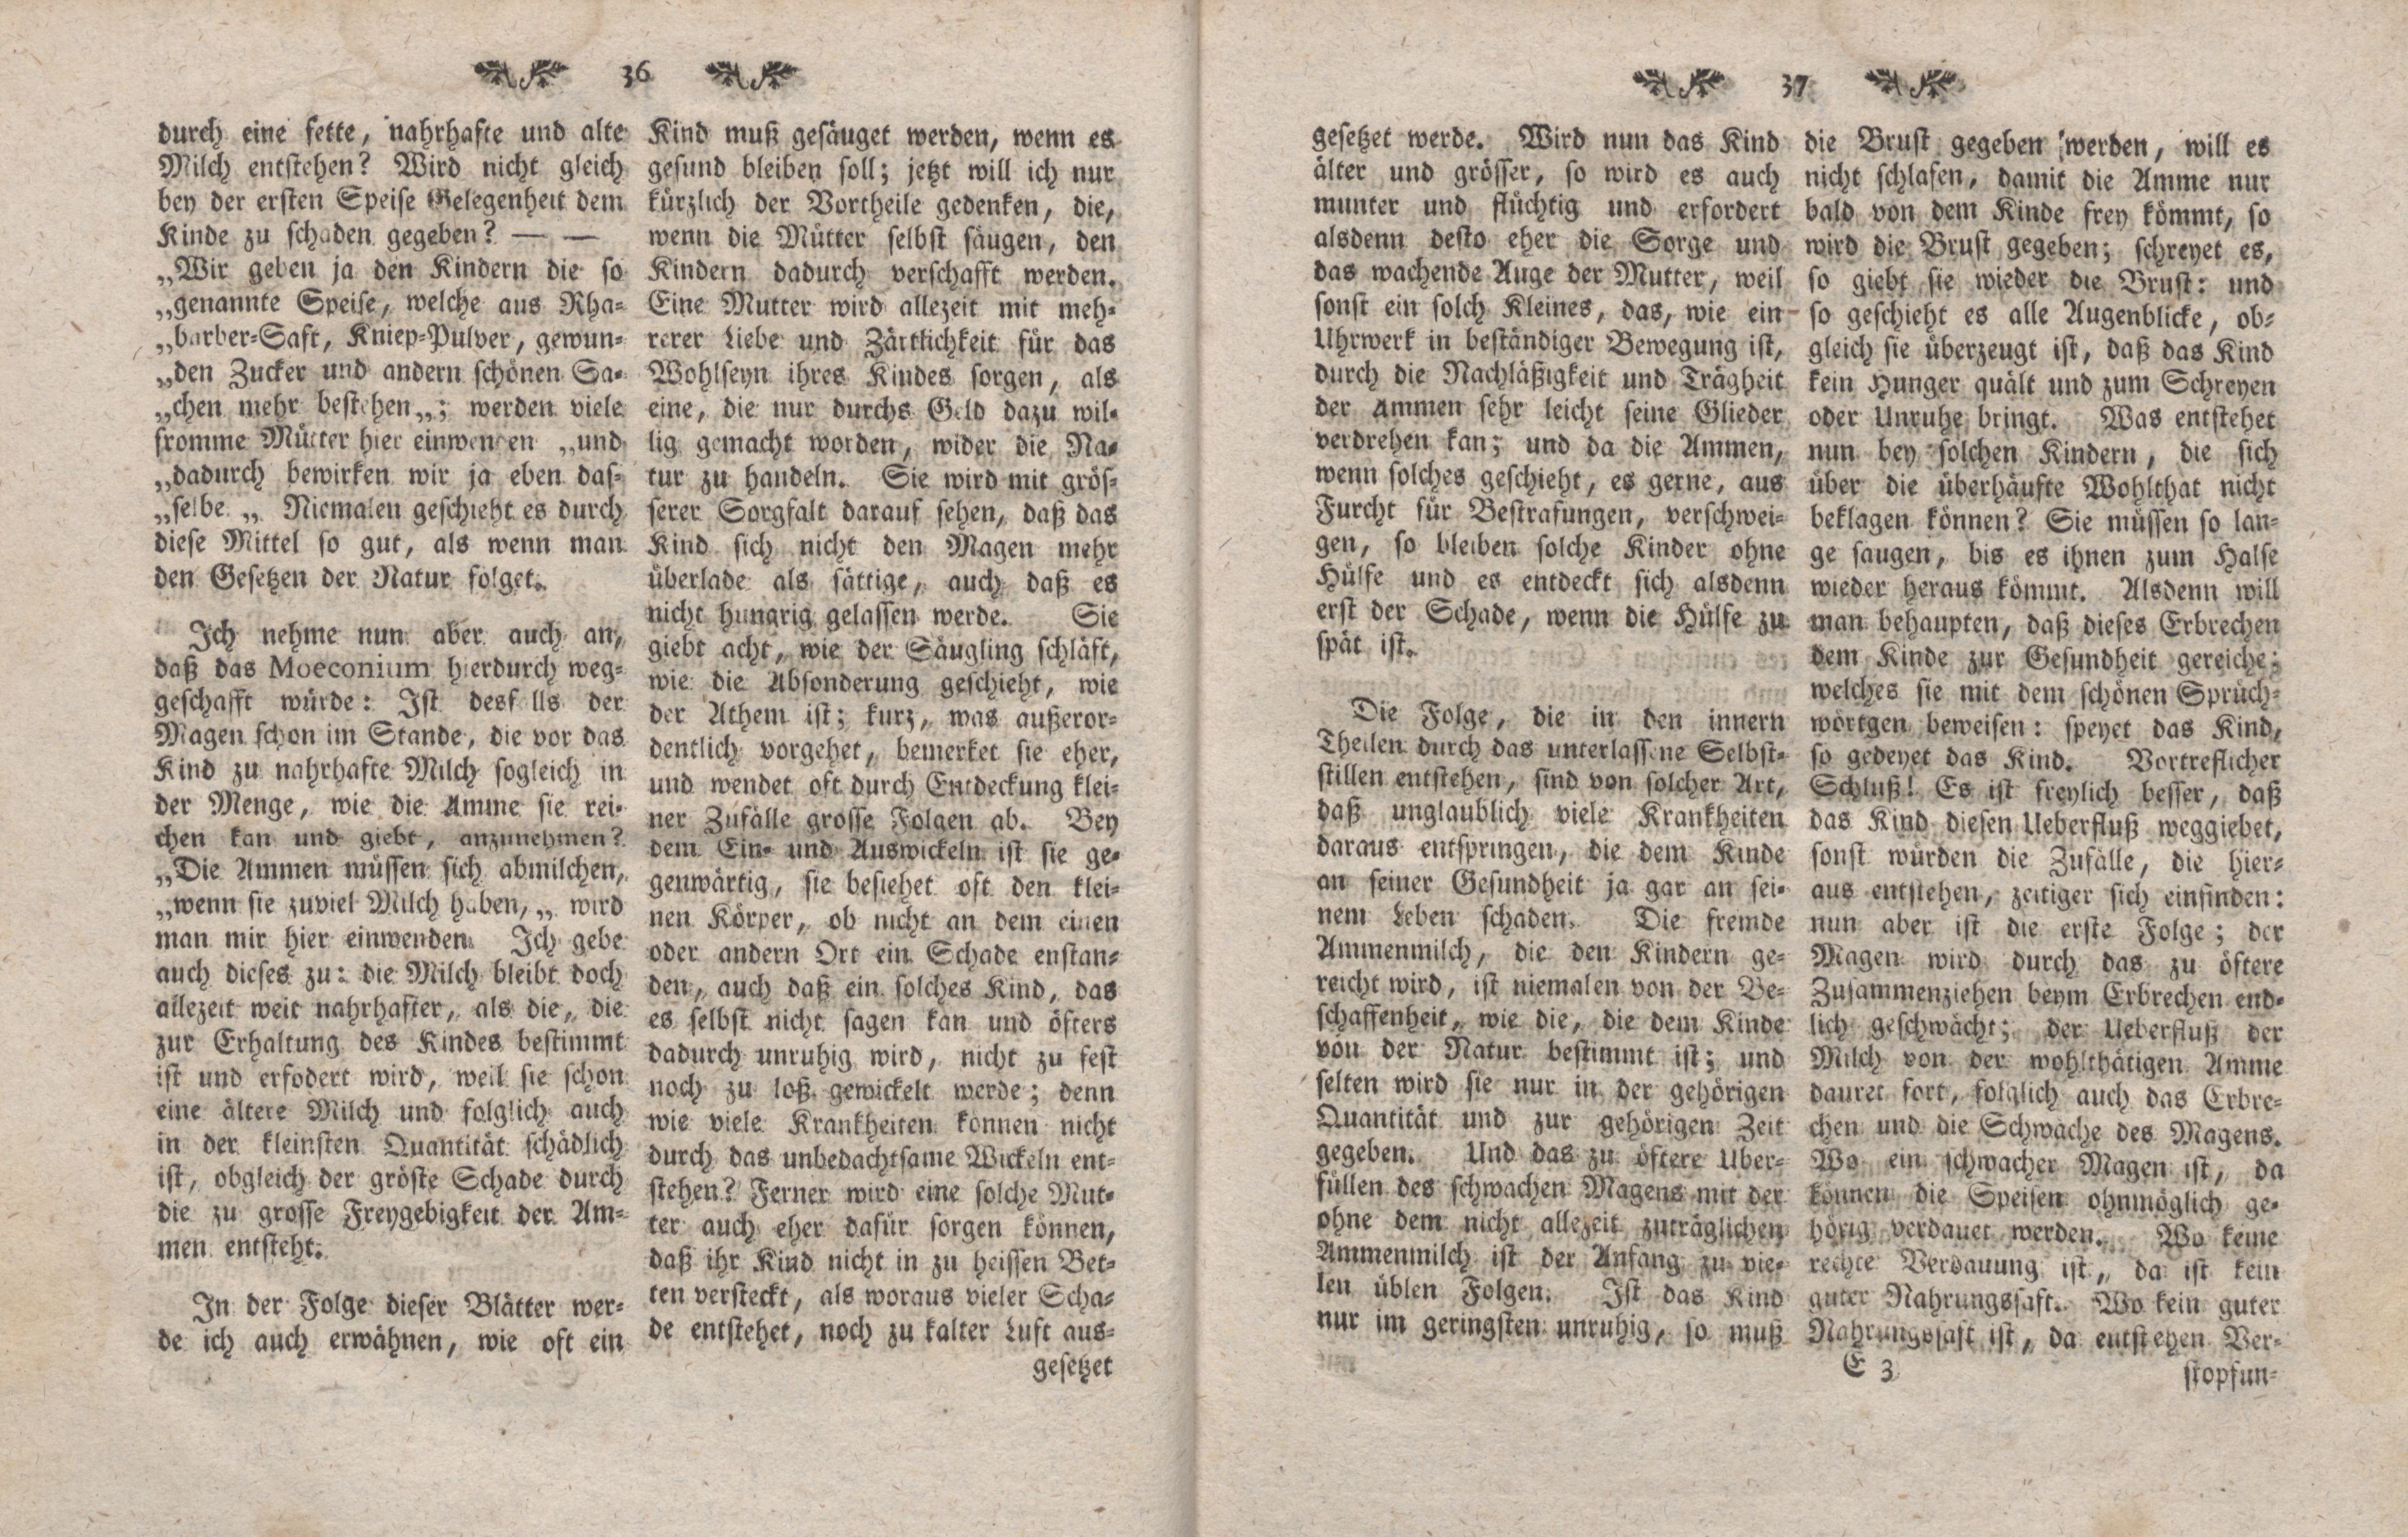 Gelehrte Beyträge zu den Rigischen Anzeigen 1761 (1761) | 19. (36-37) Main body of text